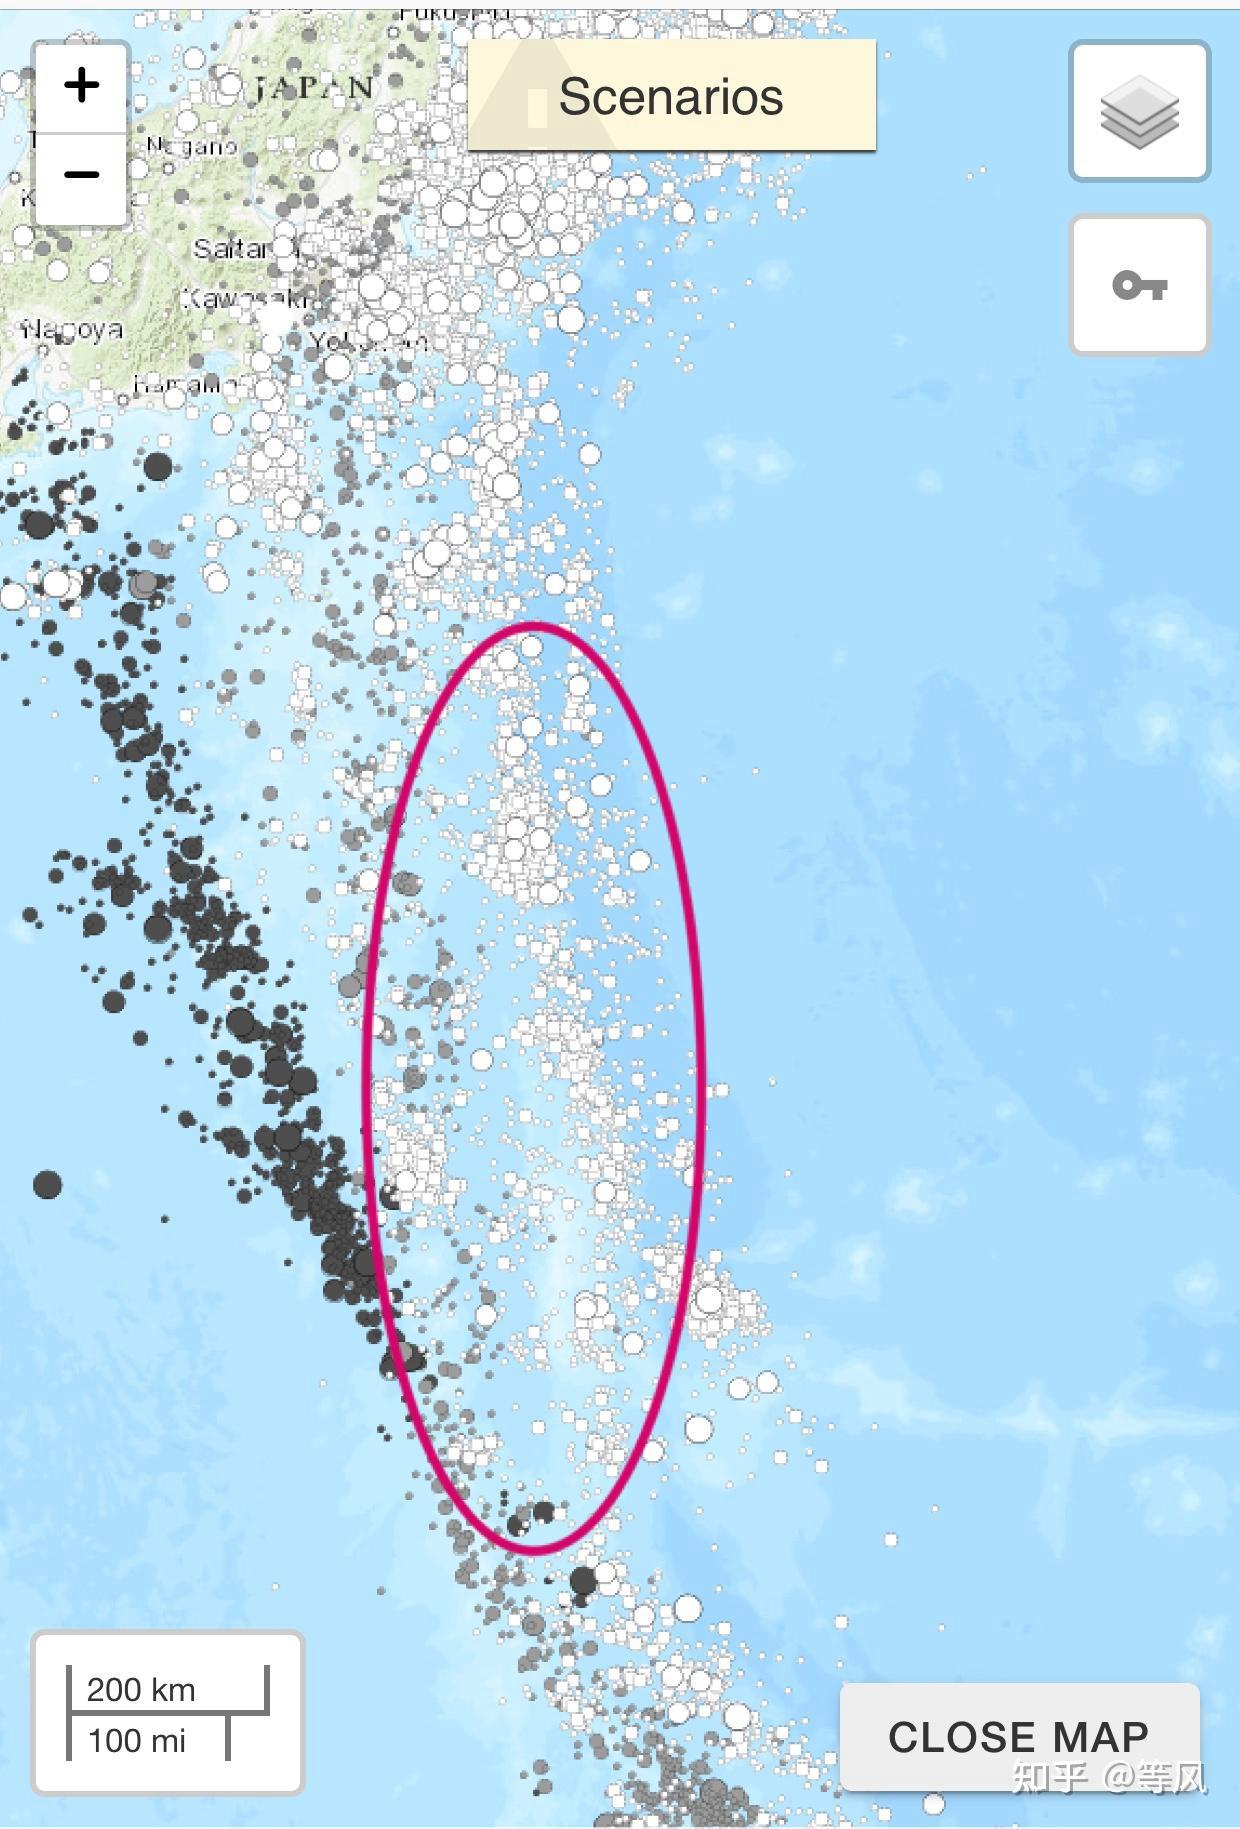 日本福岛以东海域发生7.3级地震，同一海域十年前曾发生大地震 - 哔哩哔哩